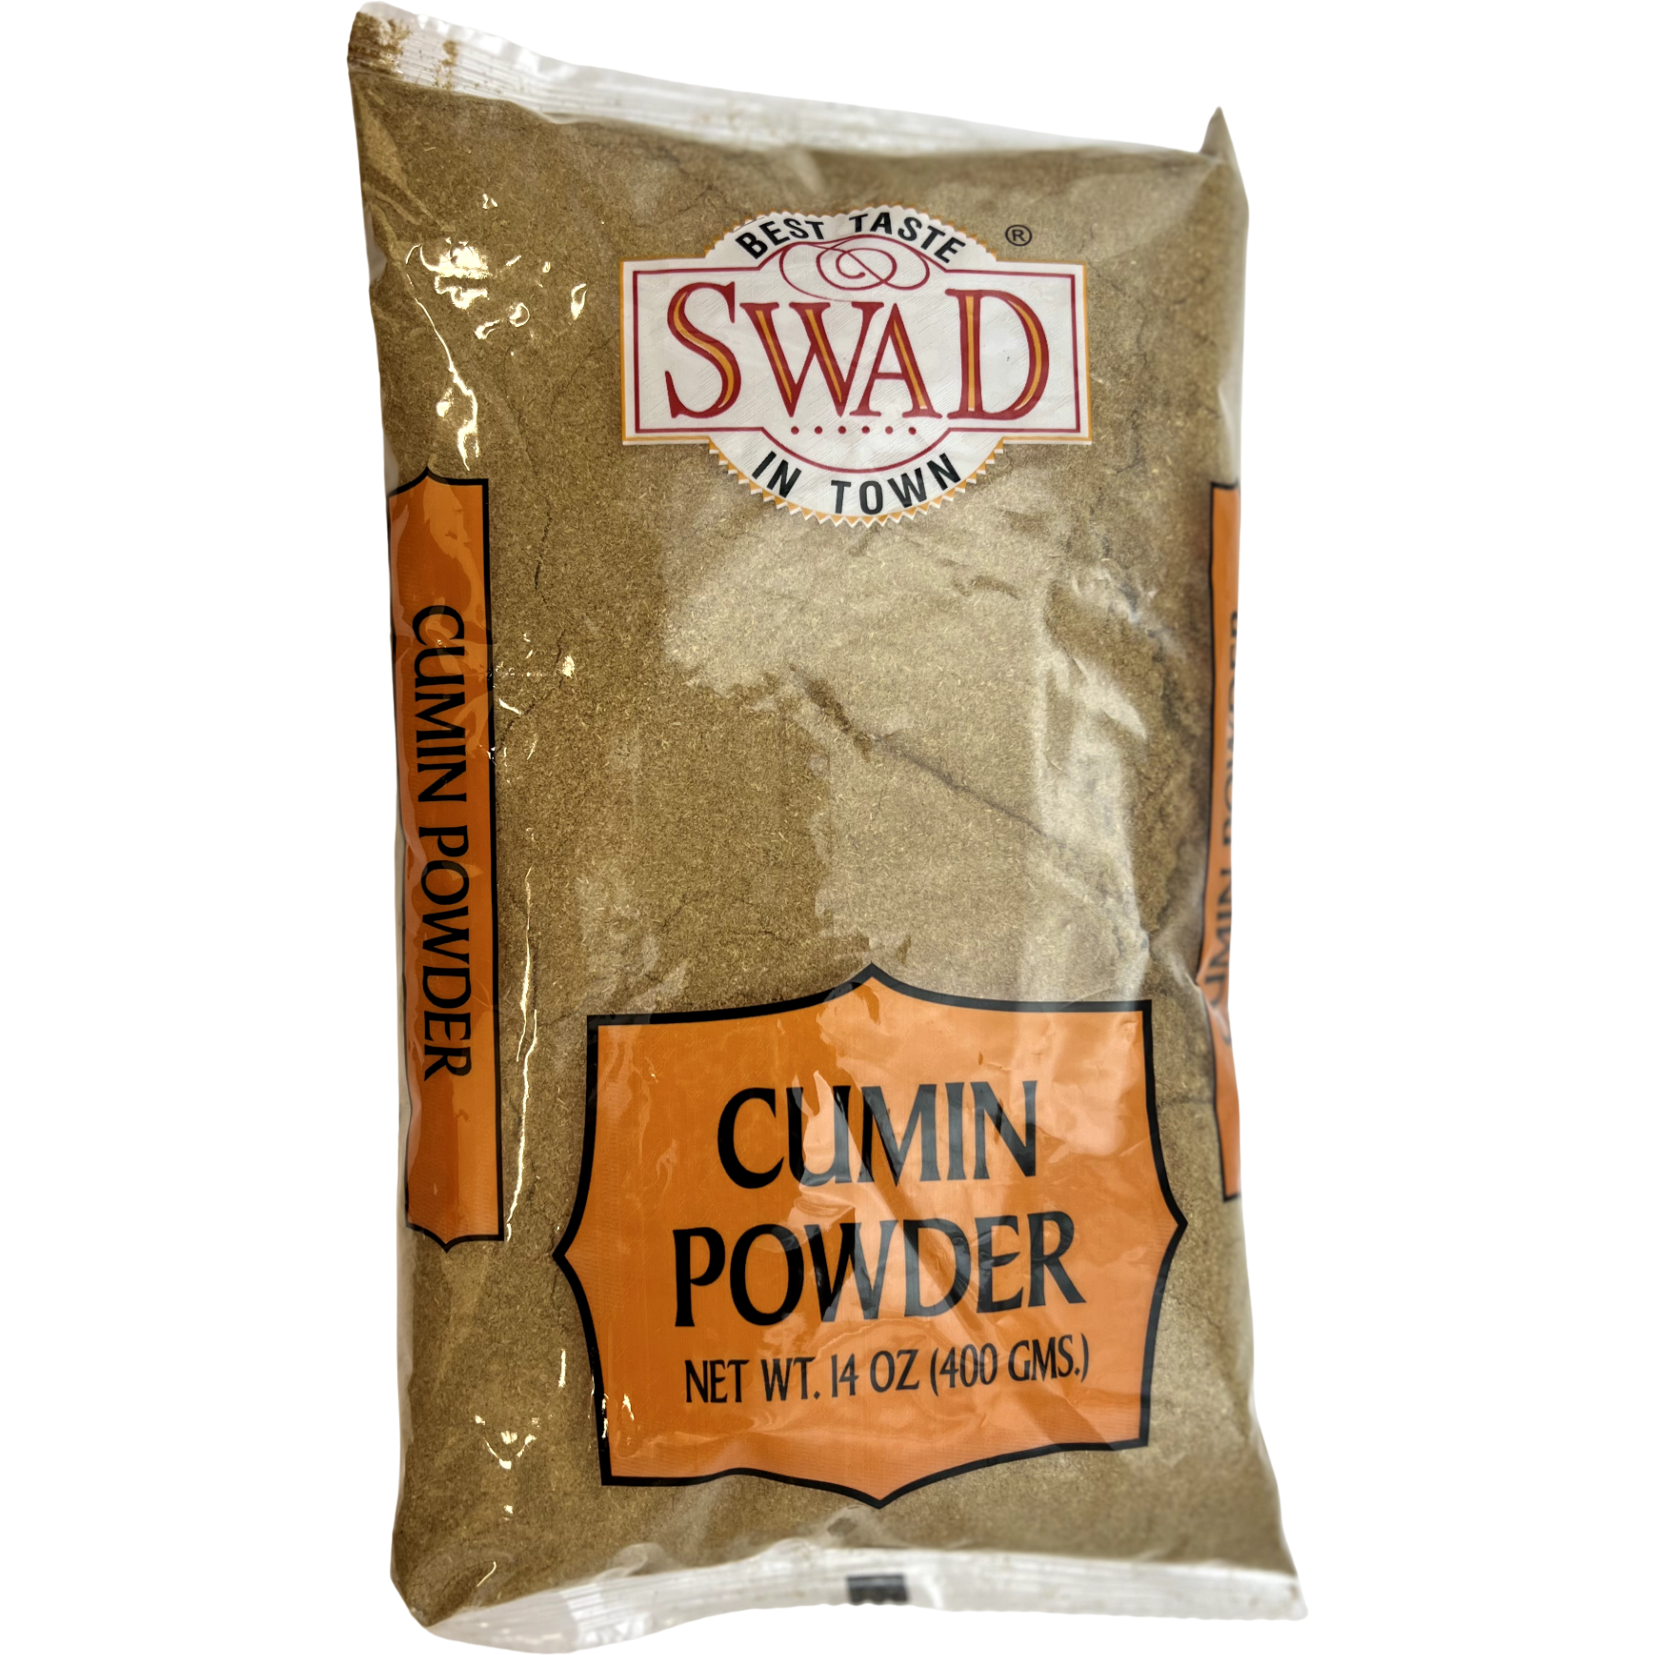 Swad Cumin Powder - 400 Gm (14 Oz)